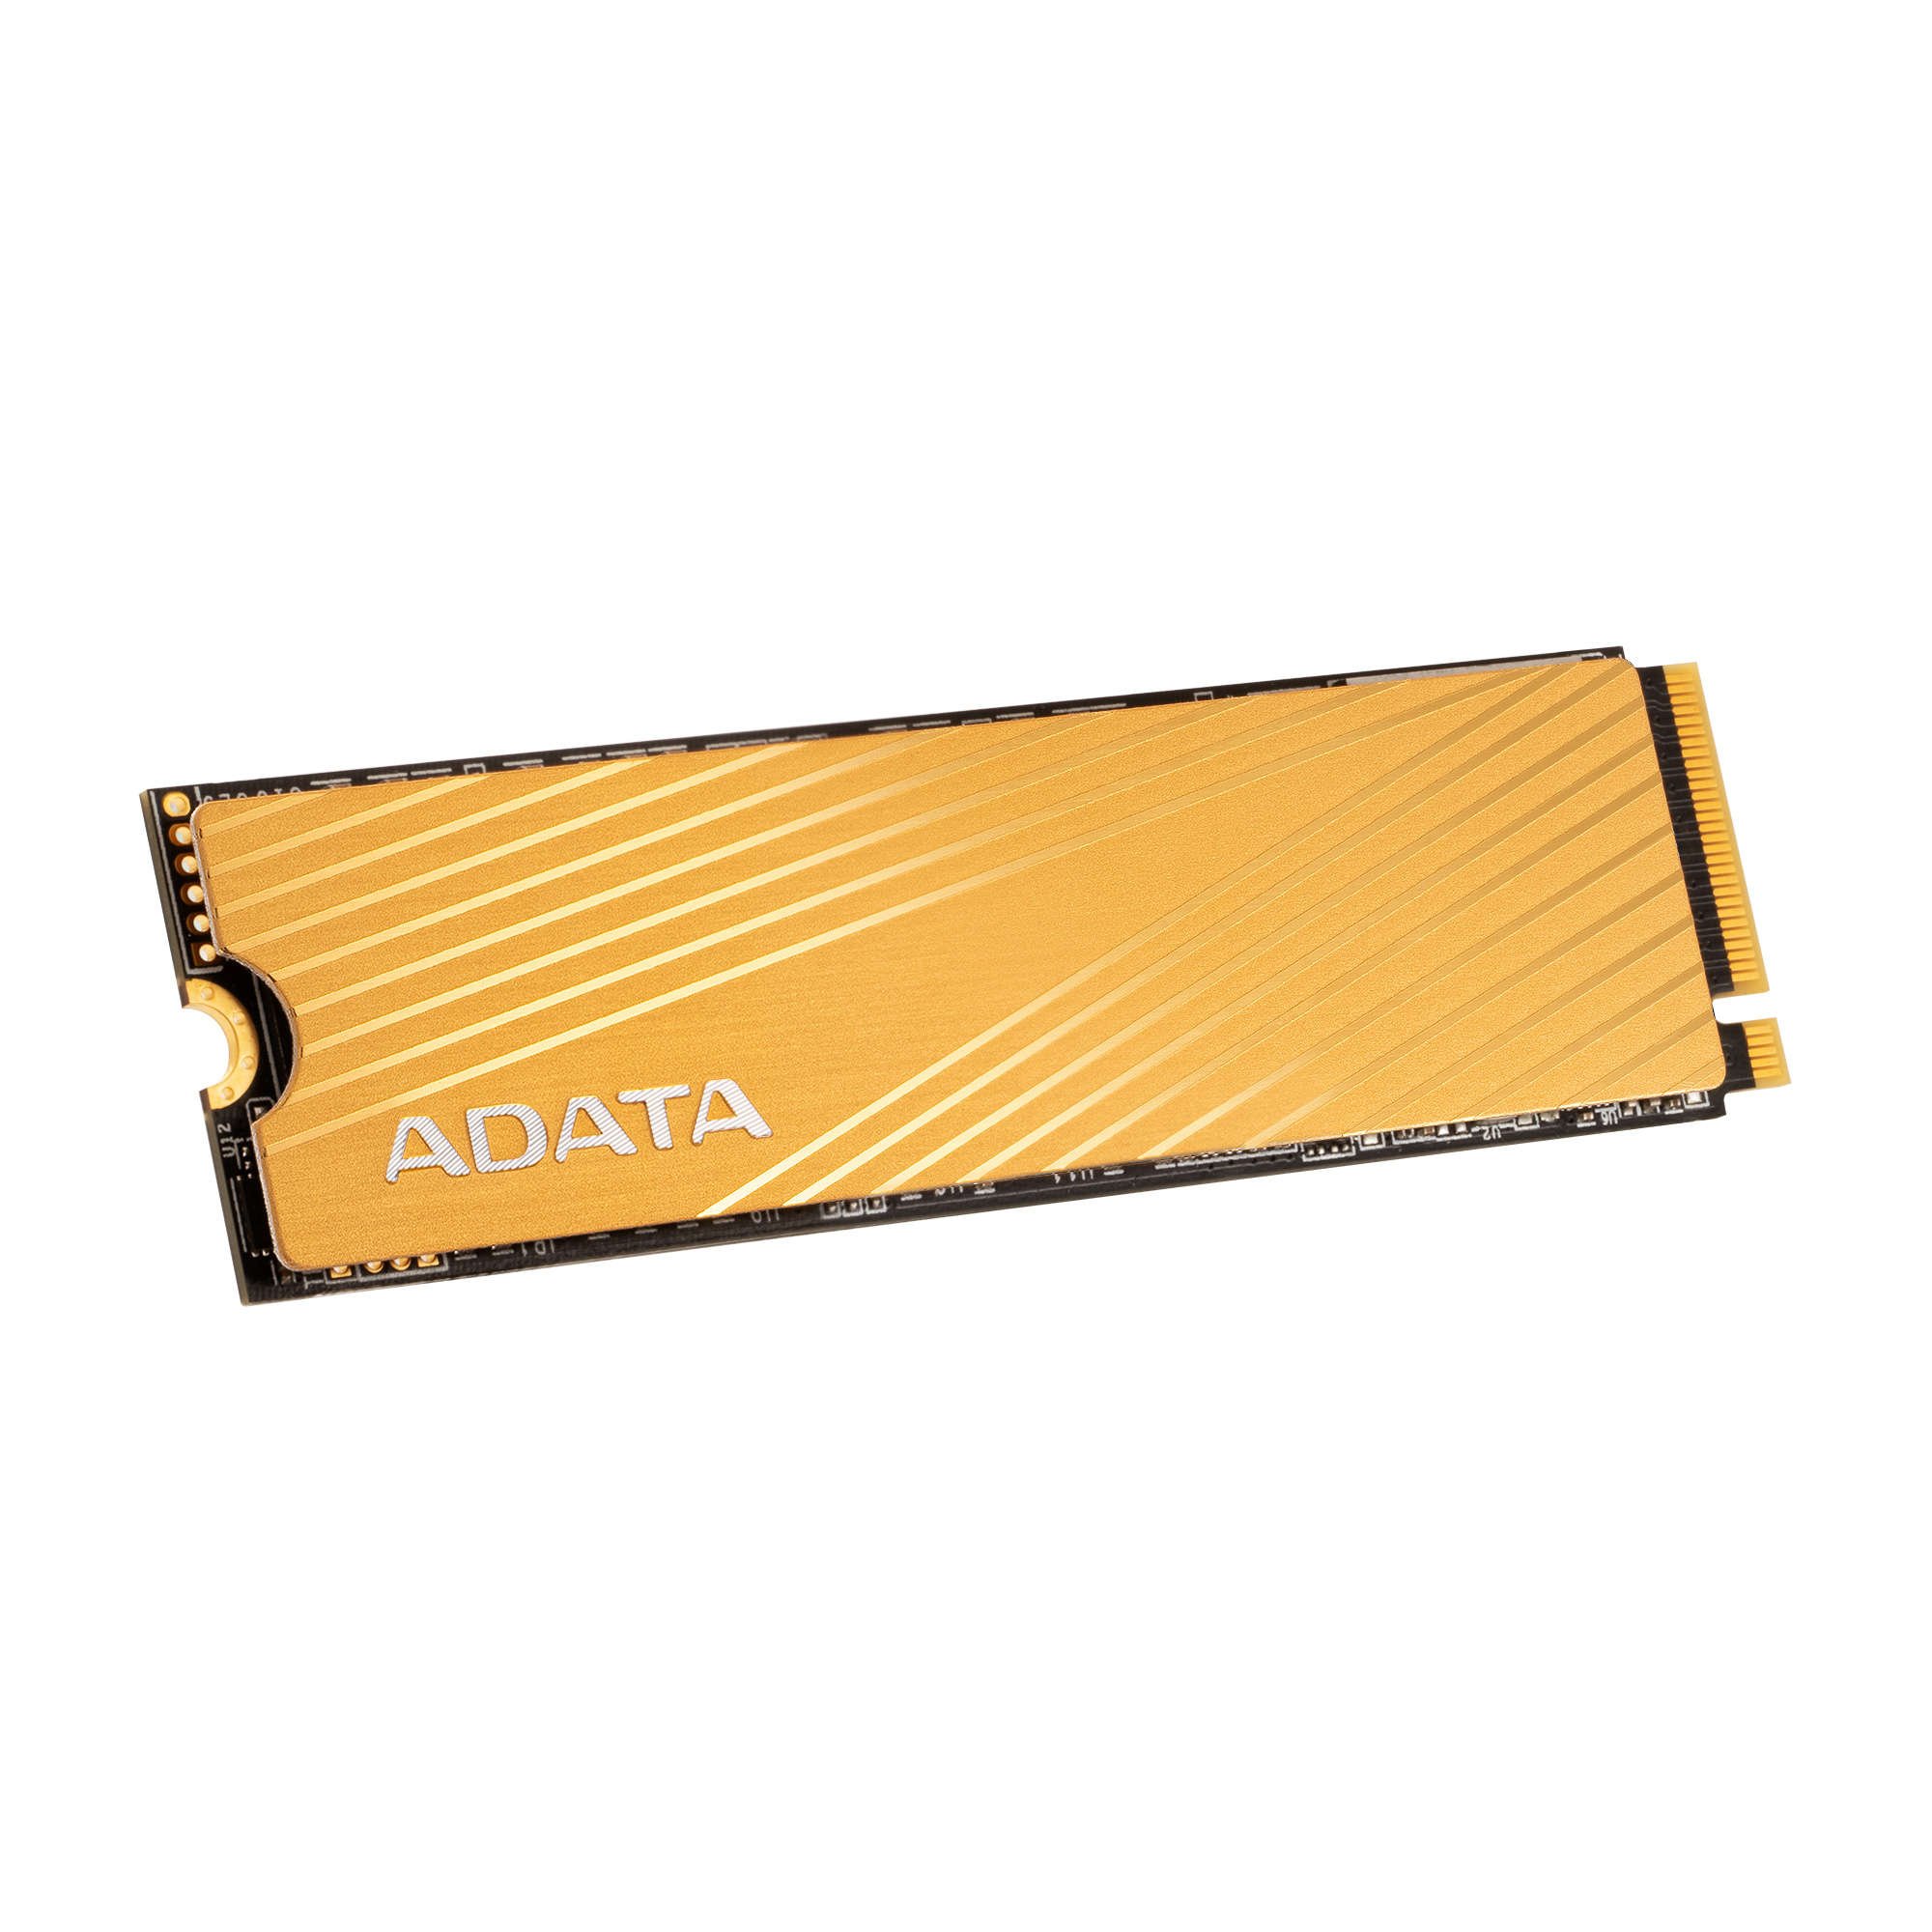 ADATA XPG FALCON 1TB SSD M.2 PCIe